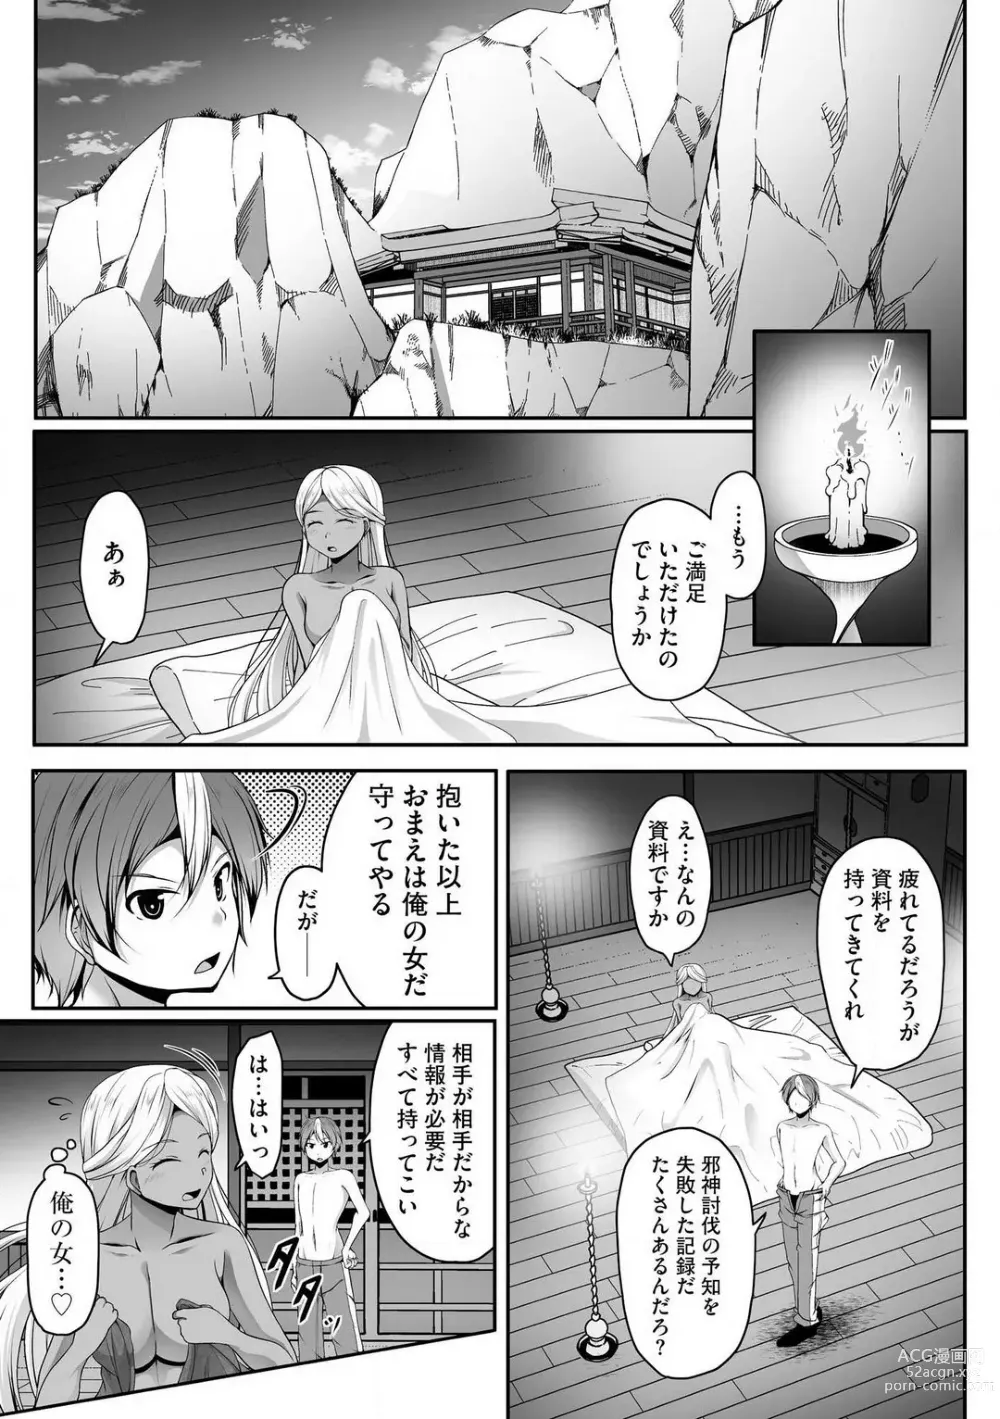 Page 336 of manga Cheat Skill Shihai